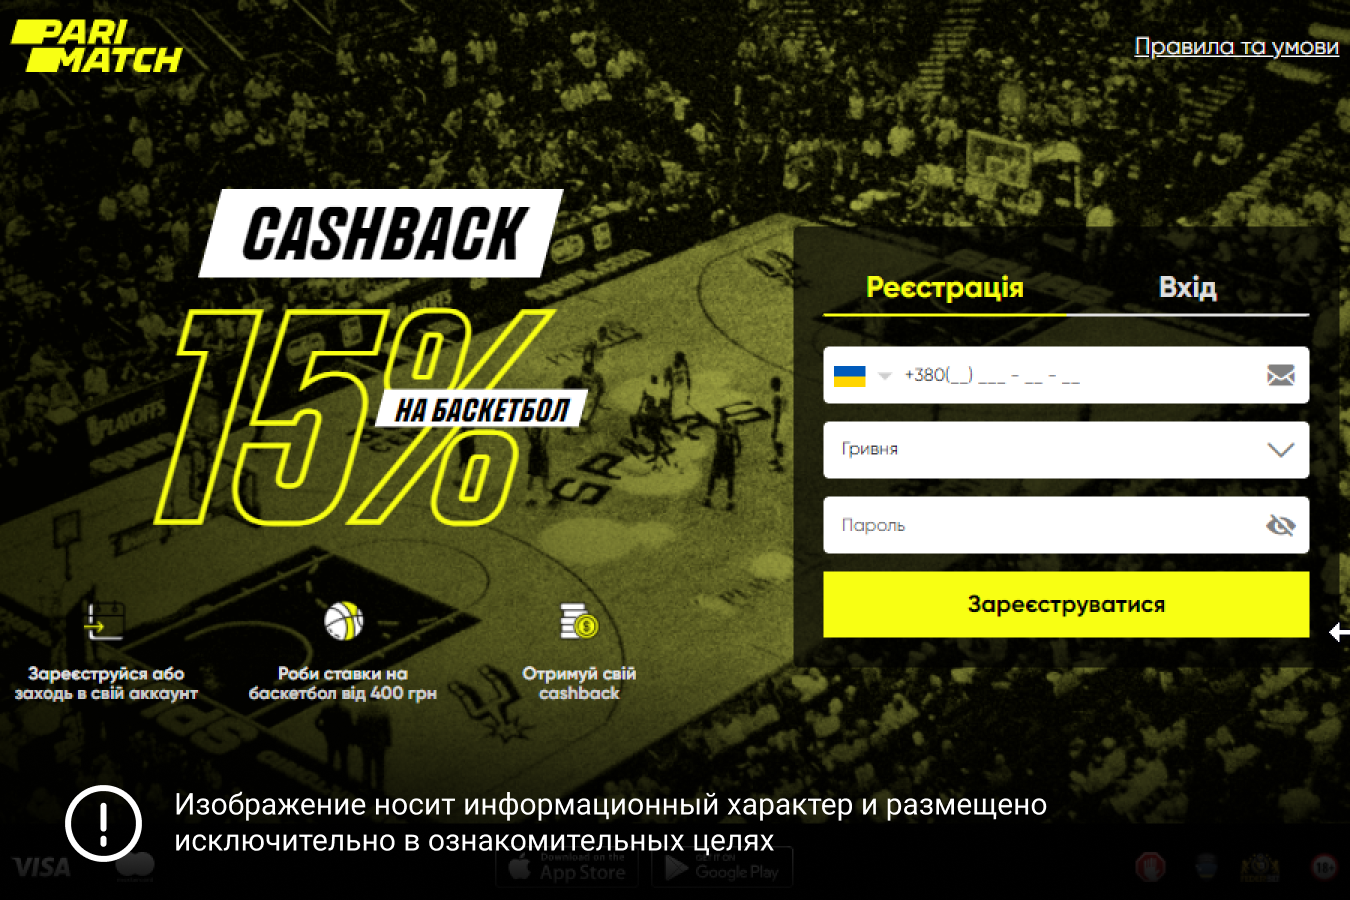 PariMatch online casino registration